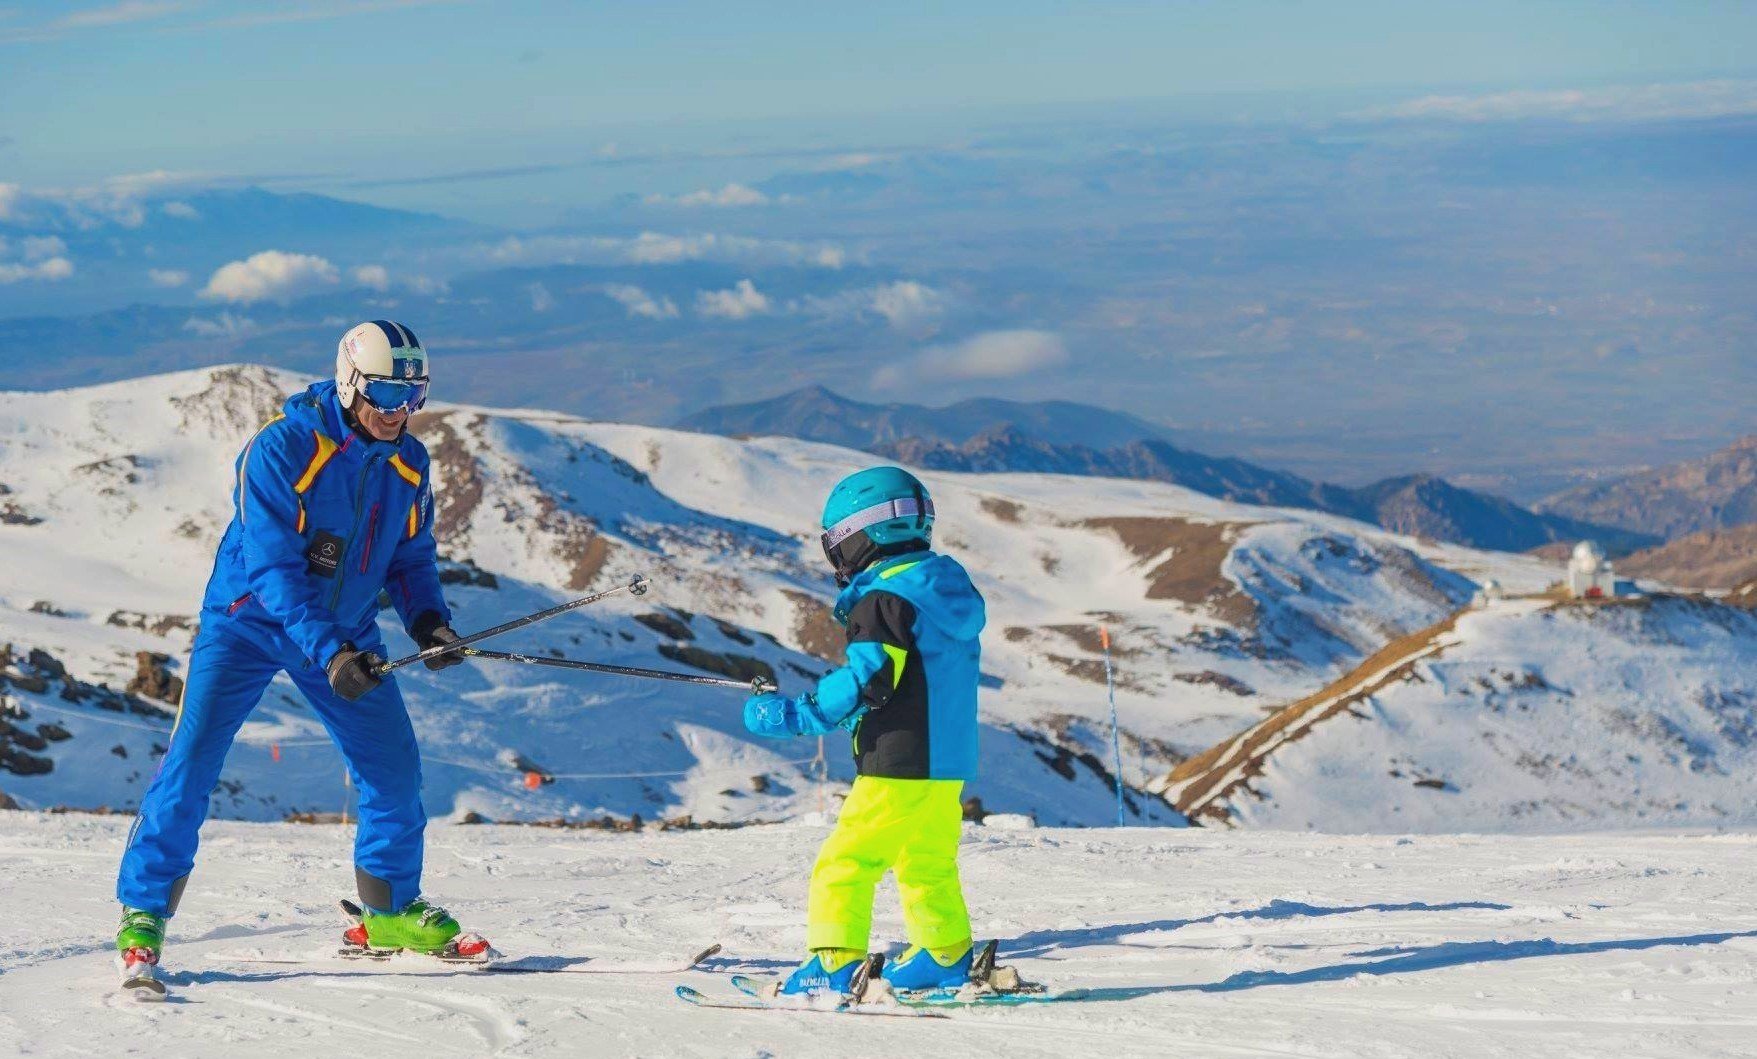 A private ski lesson for kids takes places in Sierra Nevada Pradollano Ski resort.